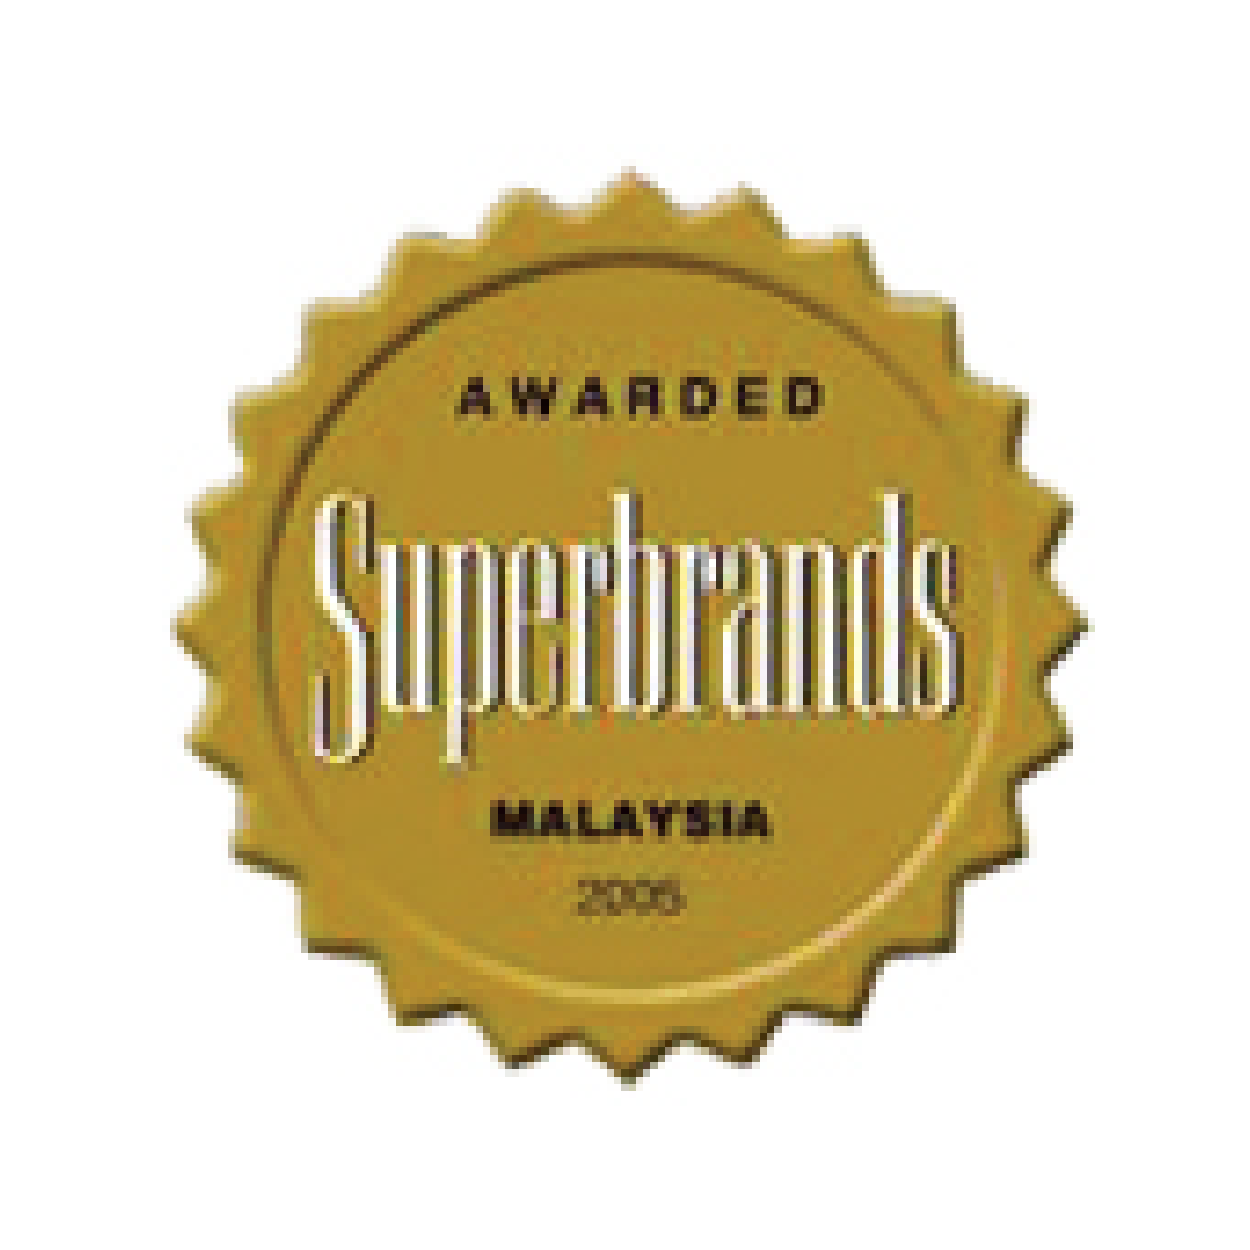 2005 - Superbrands